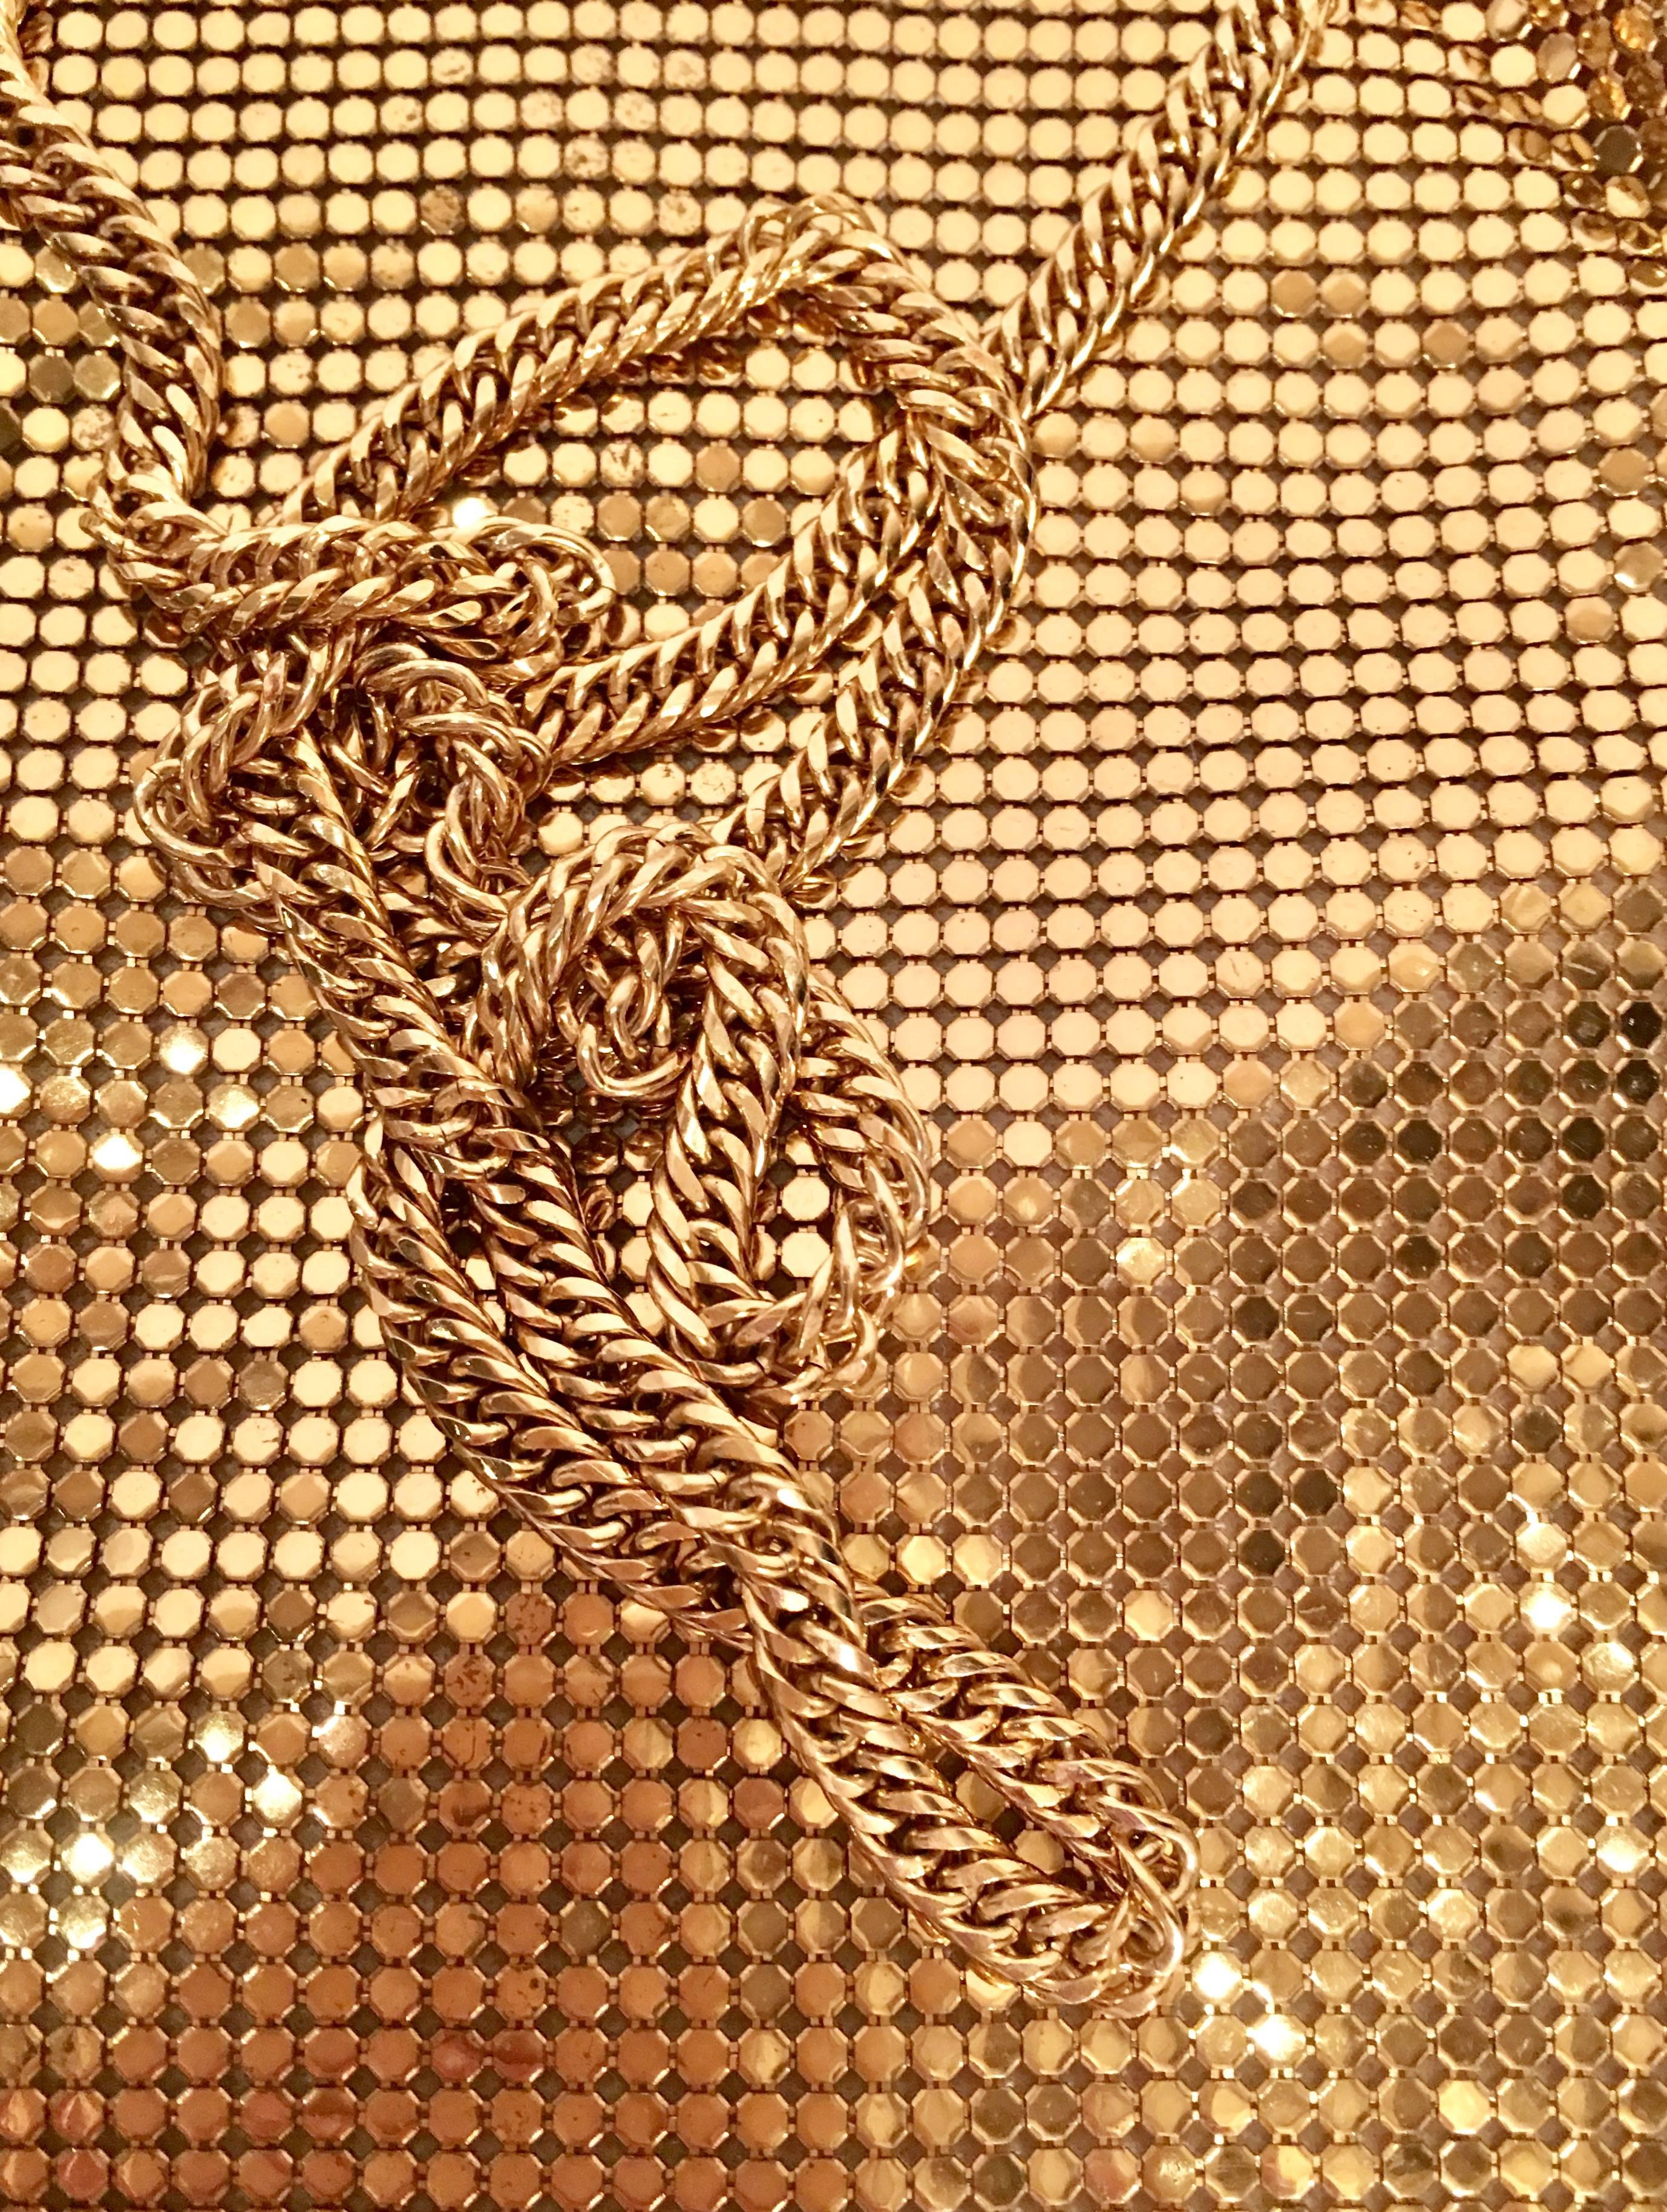 Whiting & Davis Gold Metal Mesh Fringe Handbag 1